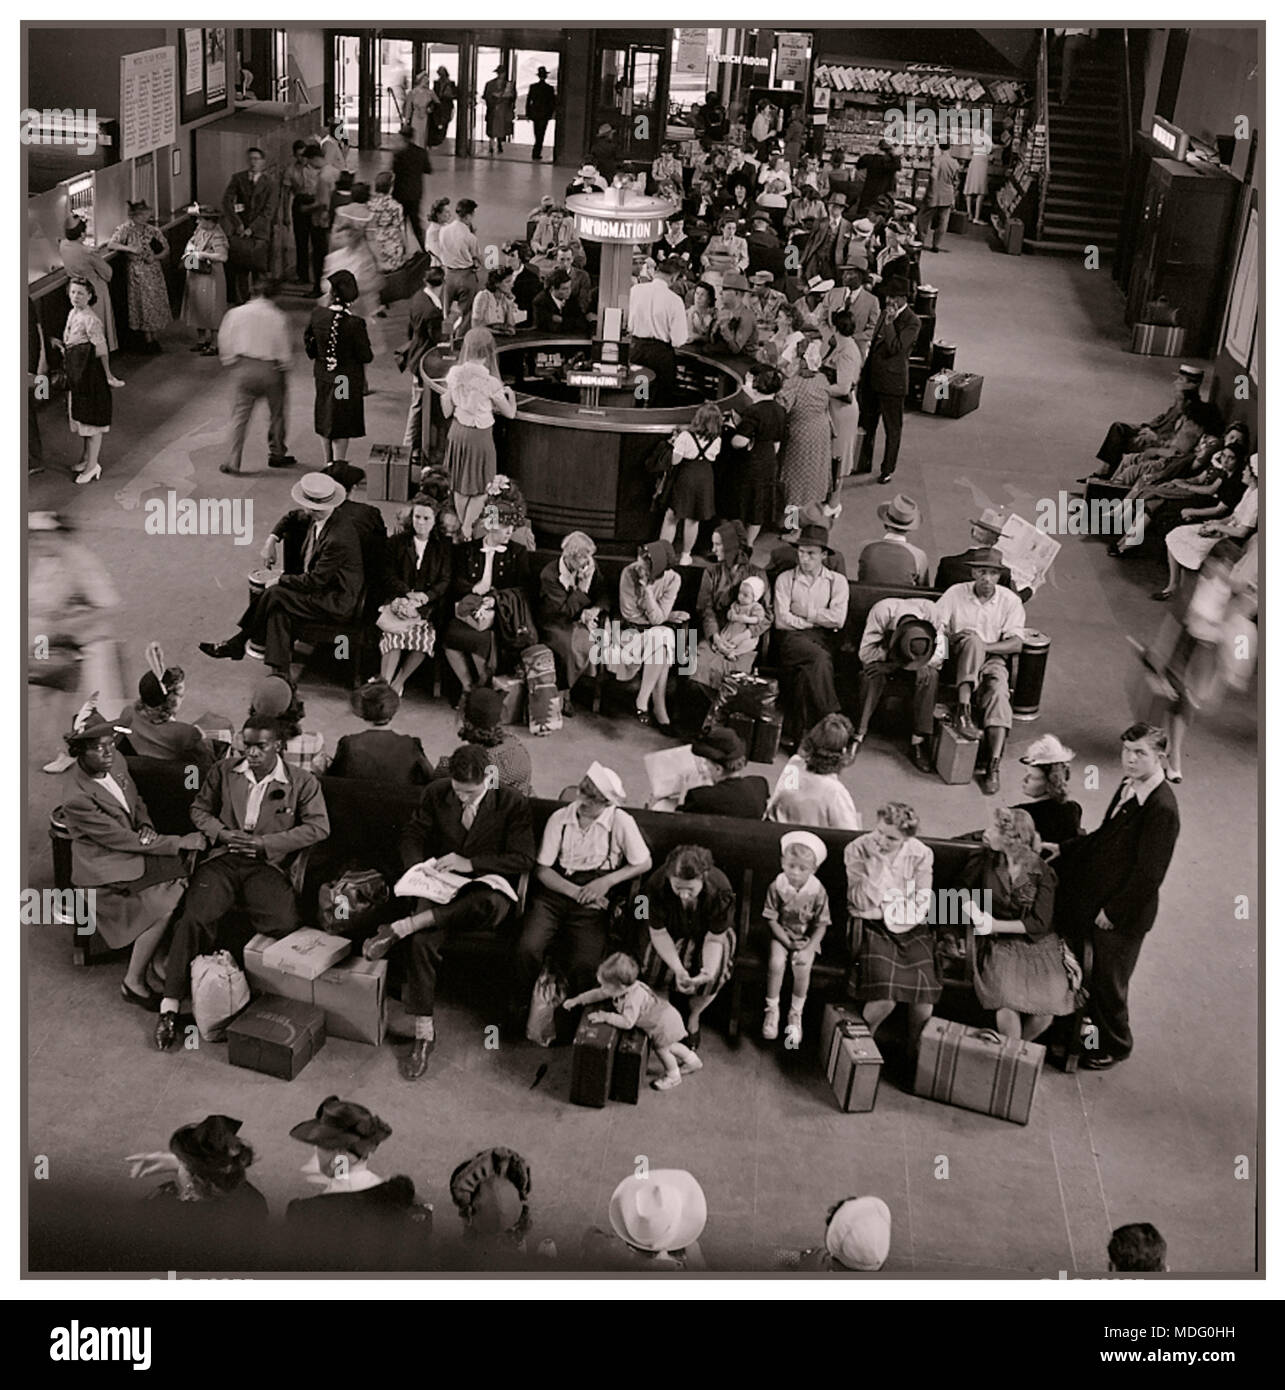 50 Der Greyhound Bus Terminal warten's Zimmer 1950 1960er Jahre Pittsburgh Pennsylvania USA B&W monochrom getonte Bild Stockfoto